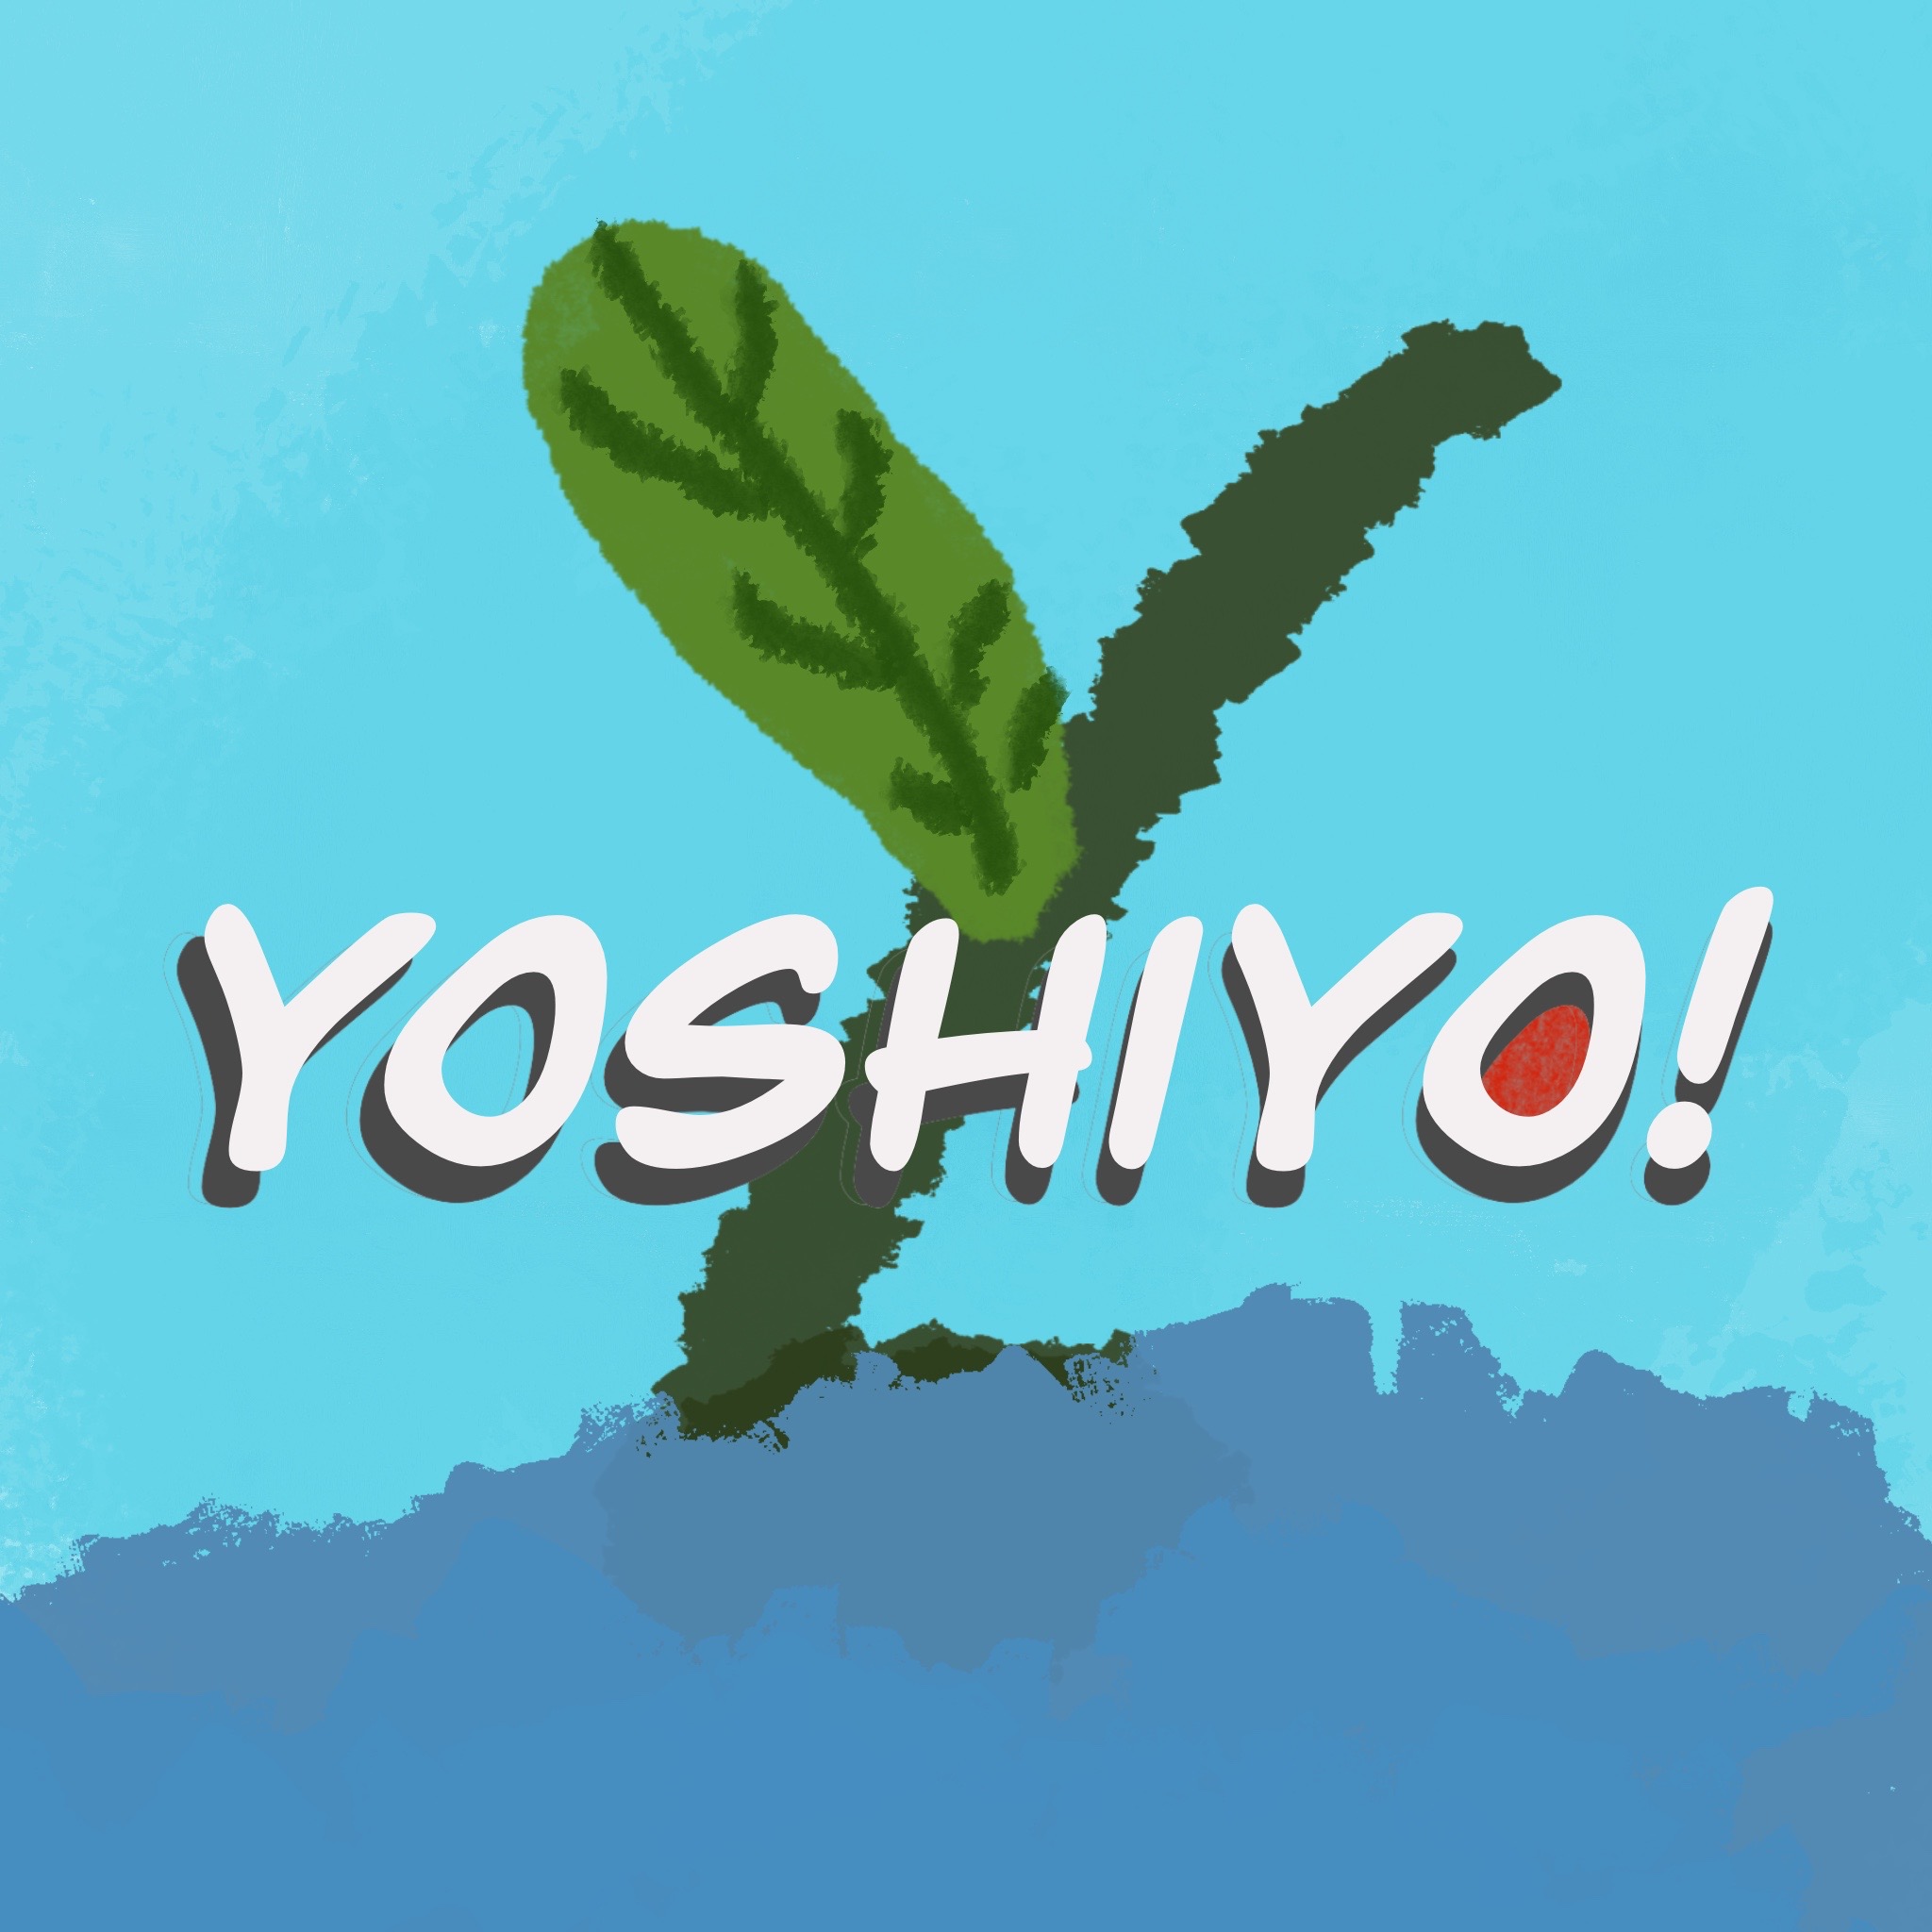 yoshiyo!好喲